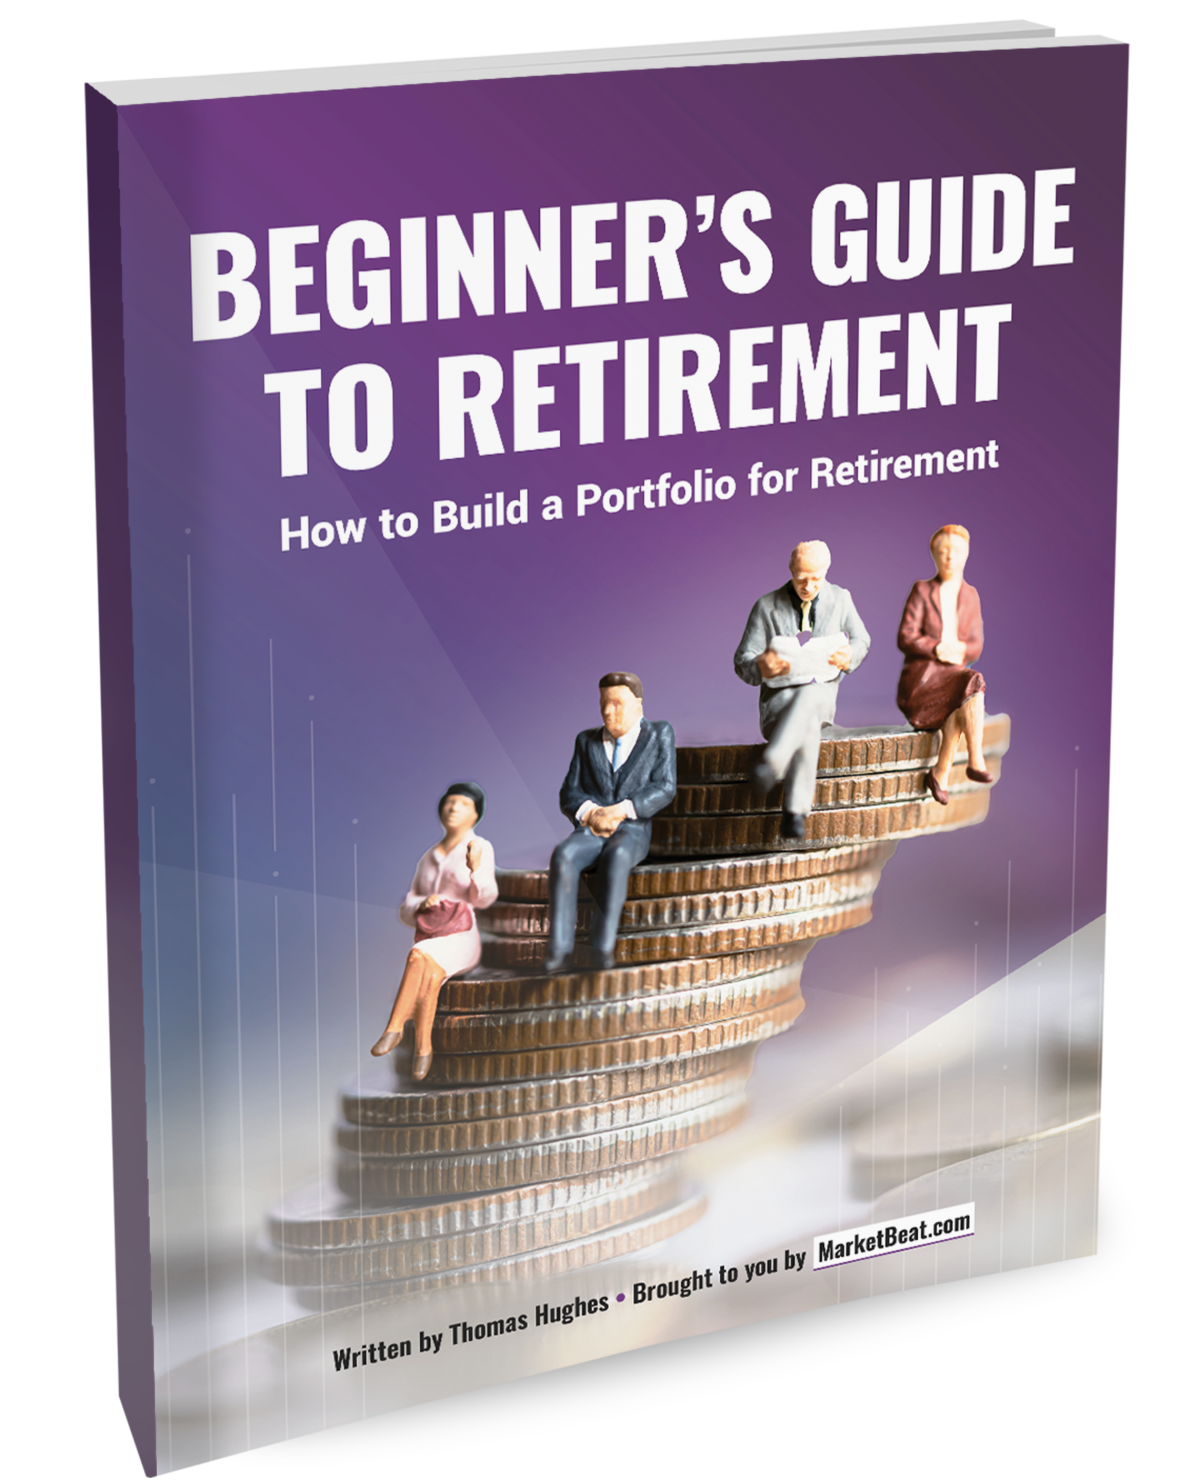 Una guía para principiantes sobre acciones para la jubilación